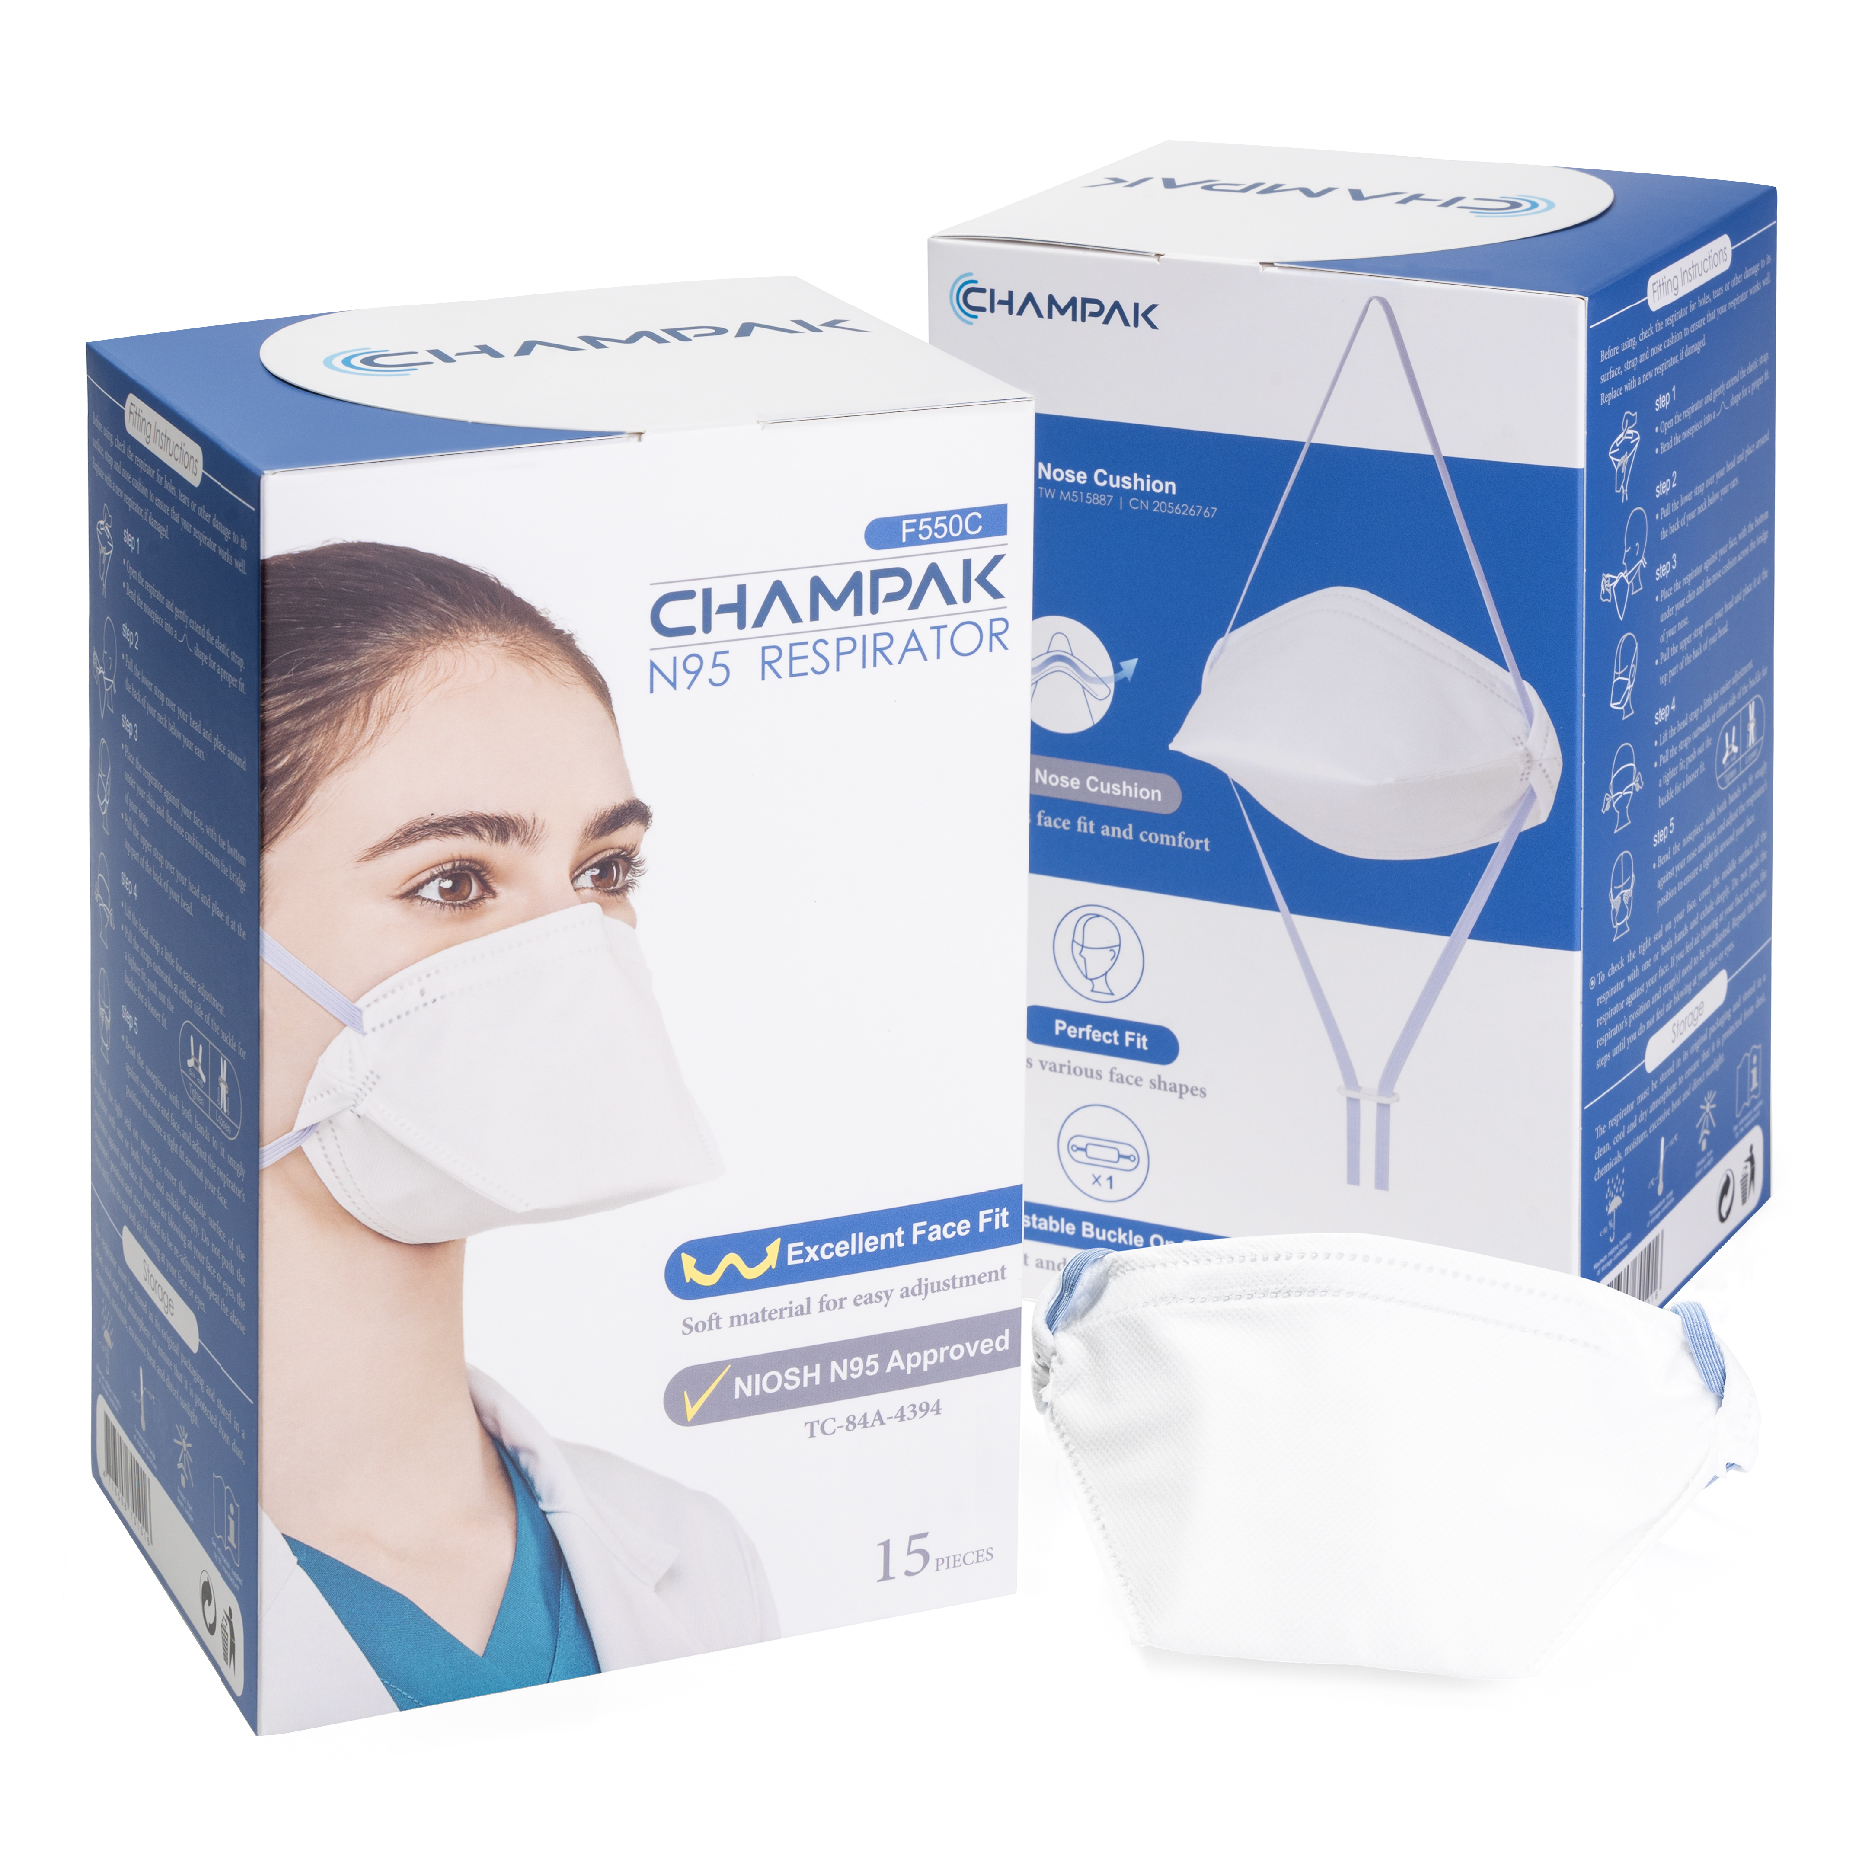 Champak - F550C - NIOSH N95 Masks